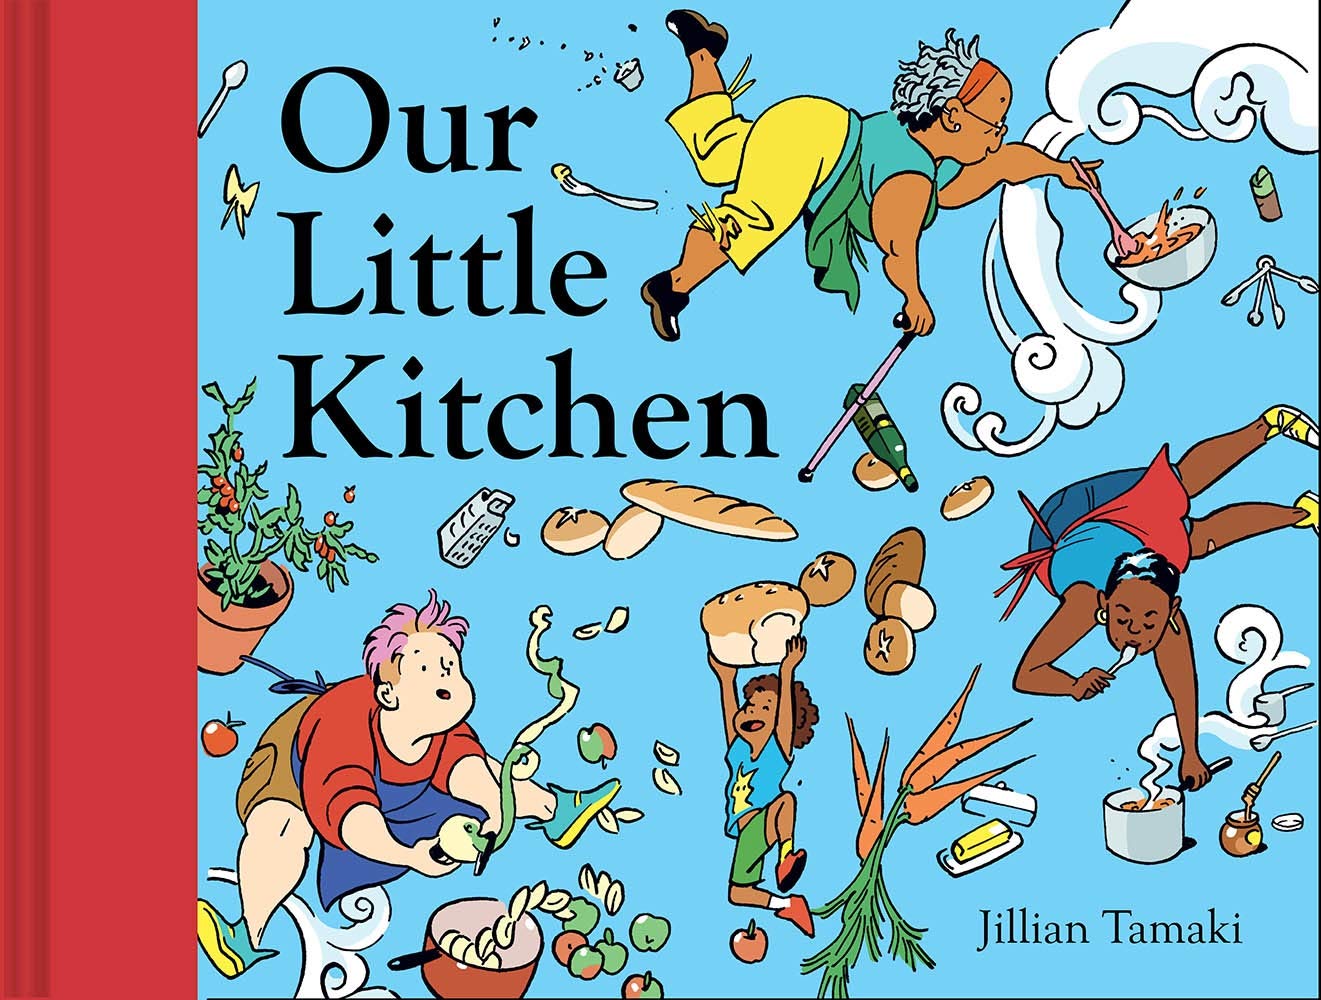 Our Little Kitchen by Jillian Tamaki